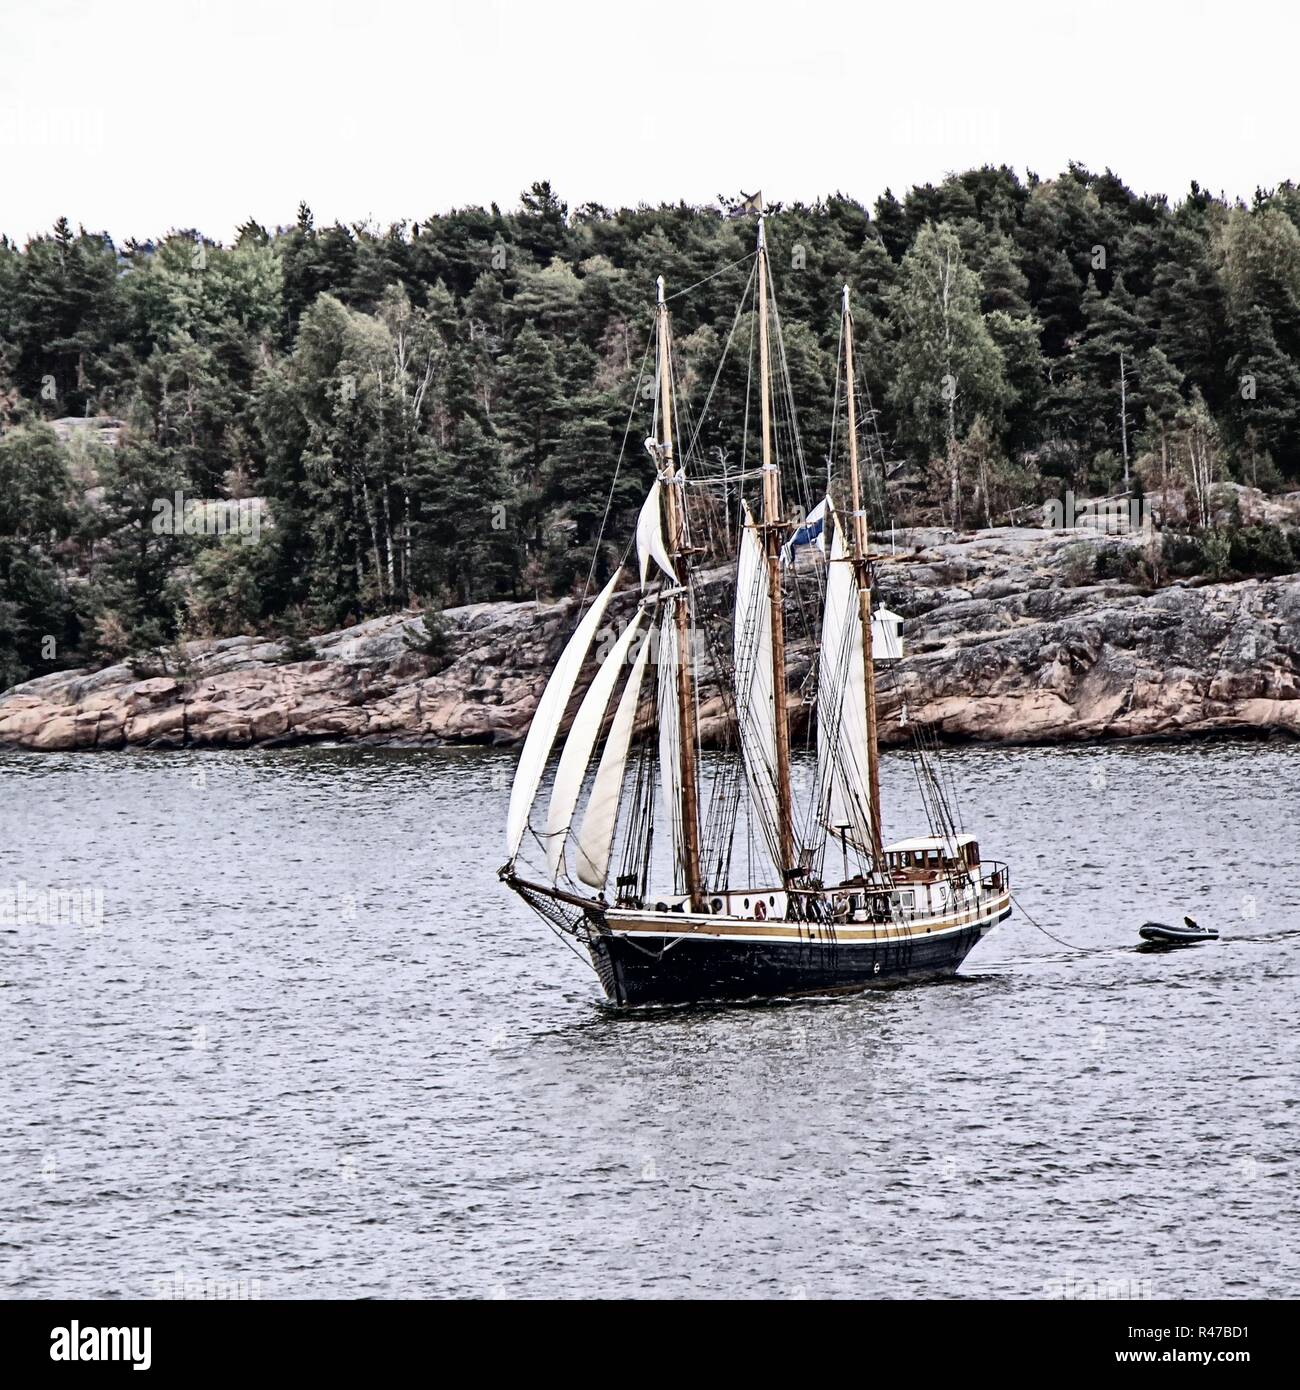 Segelschiff. Foto im Vintage bild Stil Stockfoto